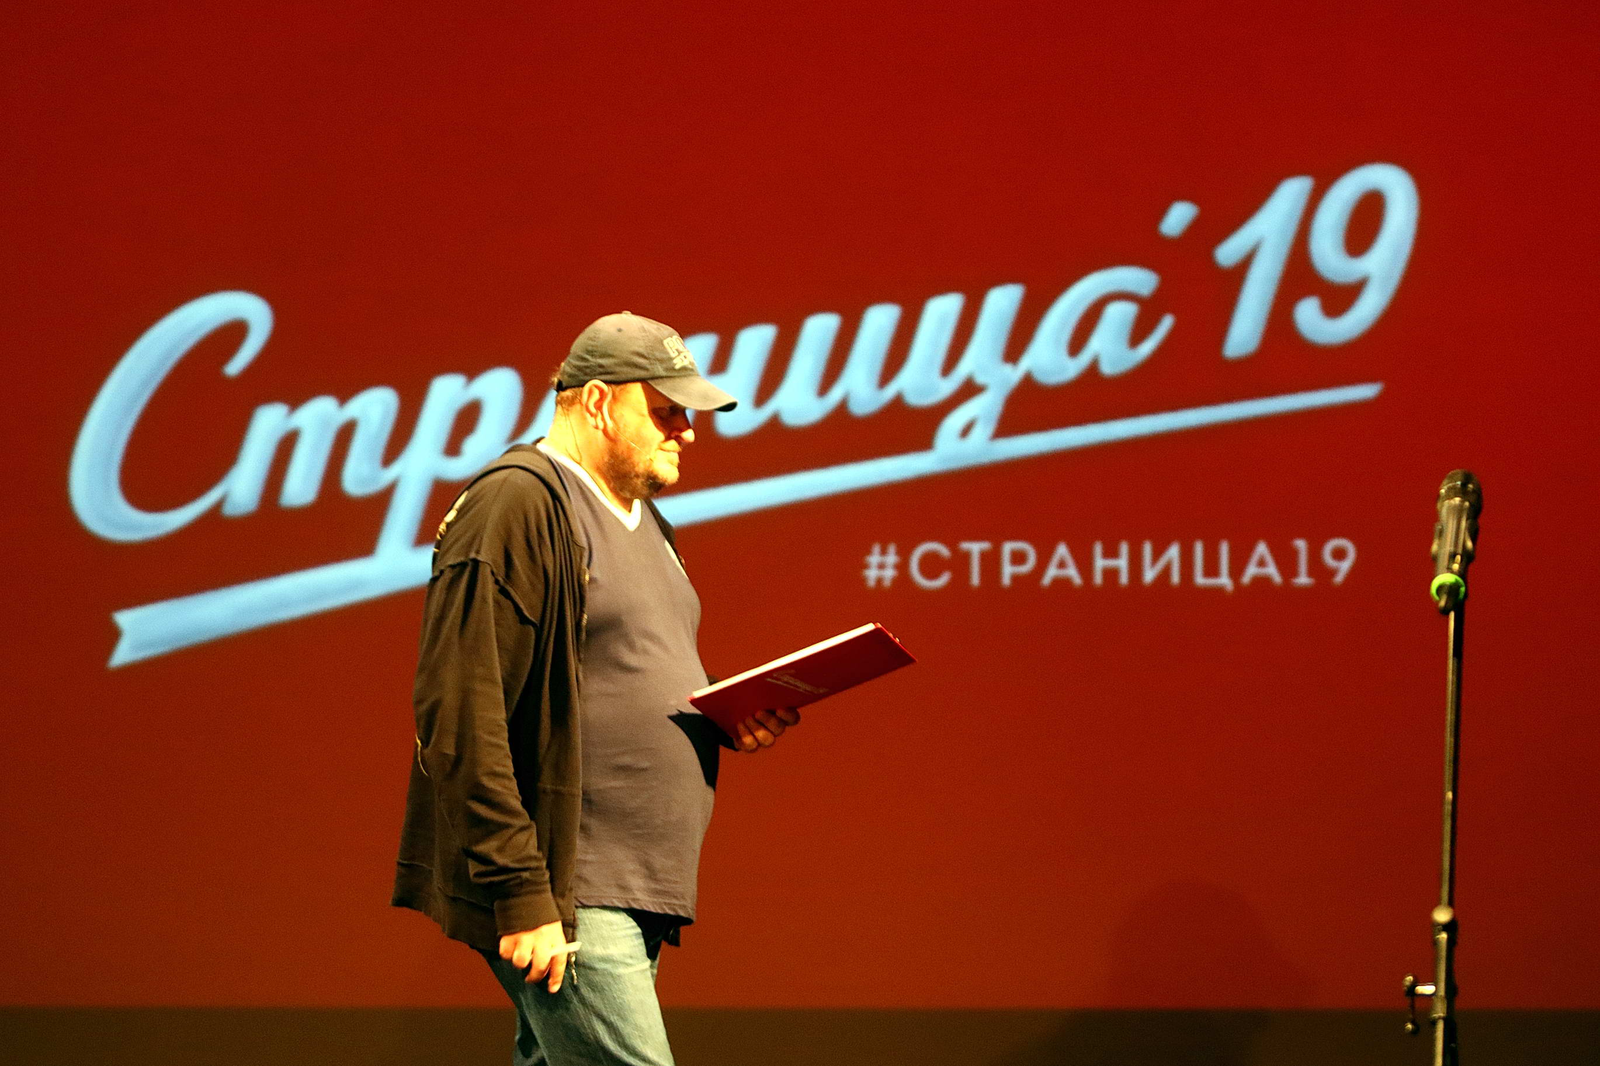 Ведущий финала — создатель проекта "Страница 19" Михаил Фаустов. Фото Михаила Бараева.